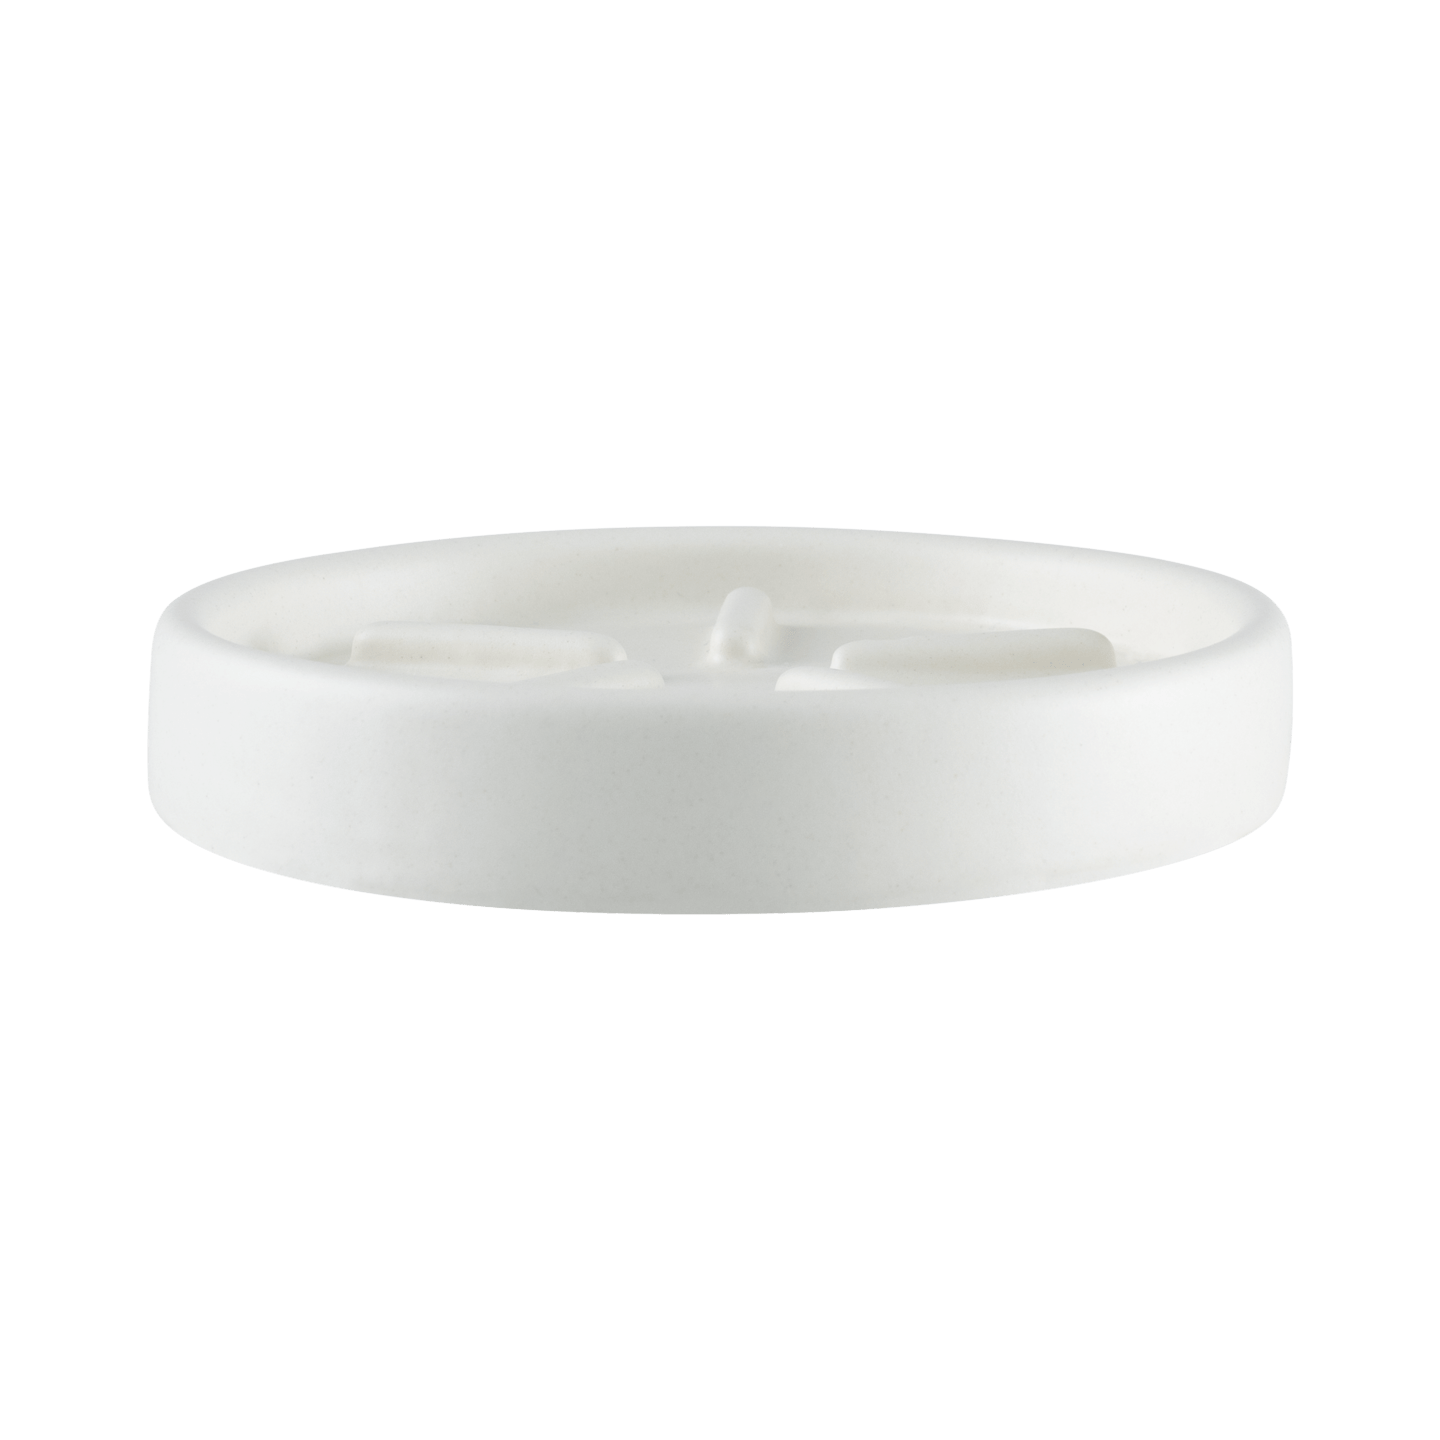 RUCK - Keramik-Seifenschale, handgefertigt, Ø 12 cm in off-white